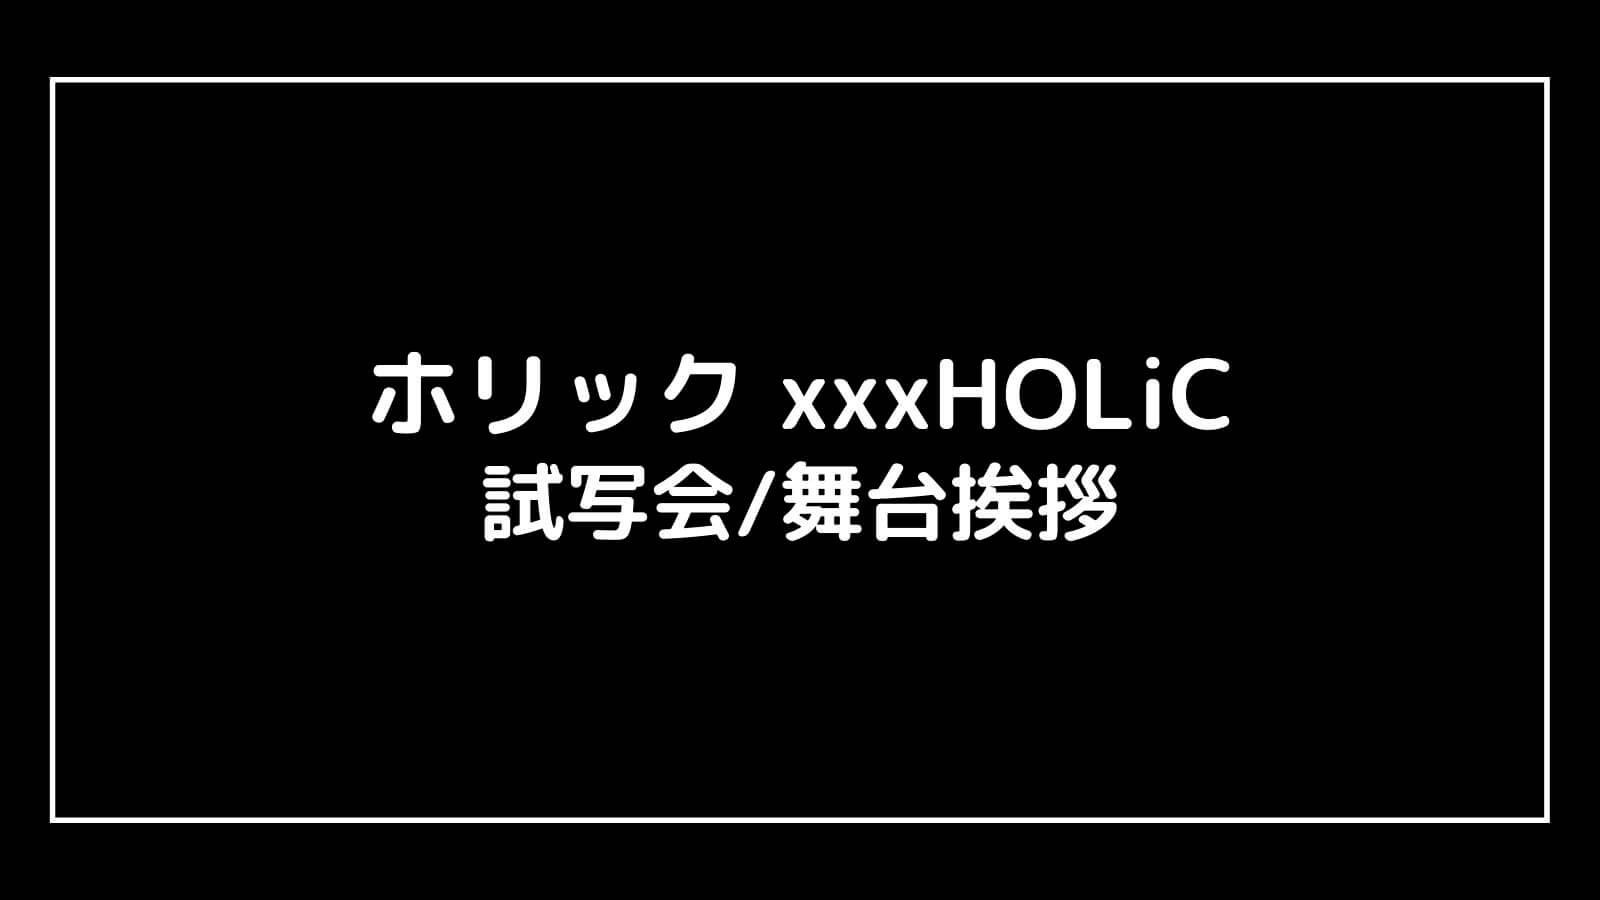 映画『ホリック xxxHOLiC』の試写会と舞台挨拶ライブビューイング情報